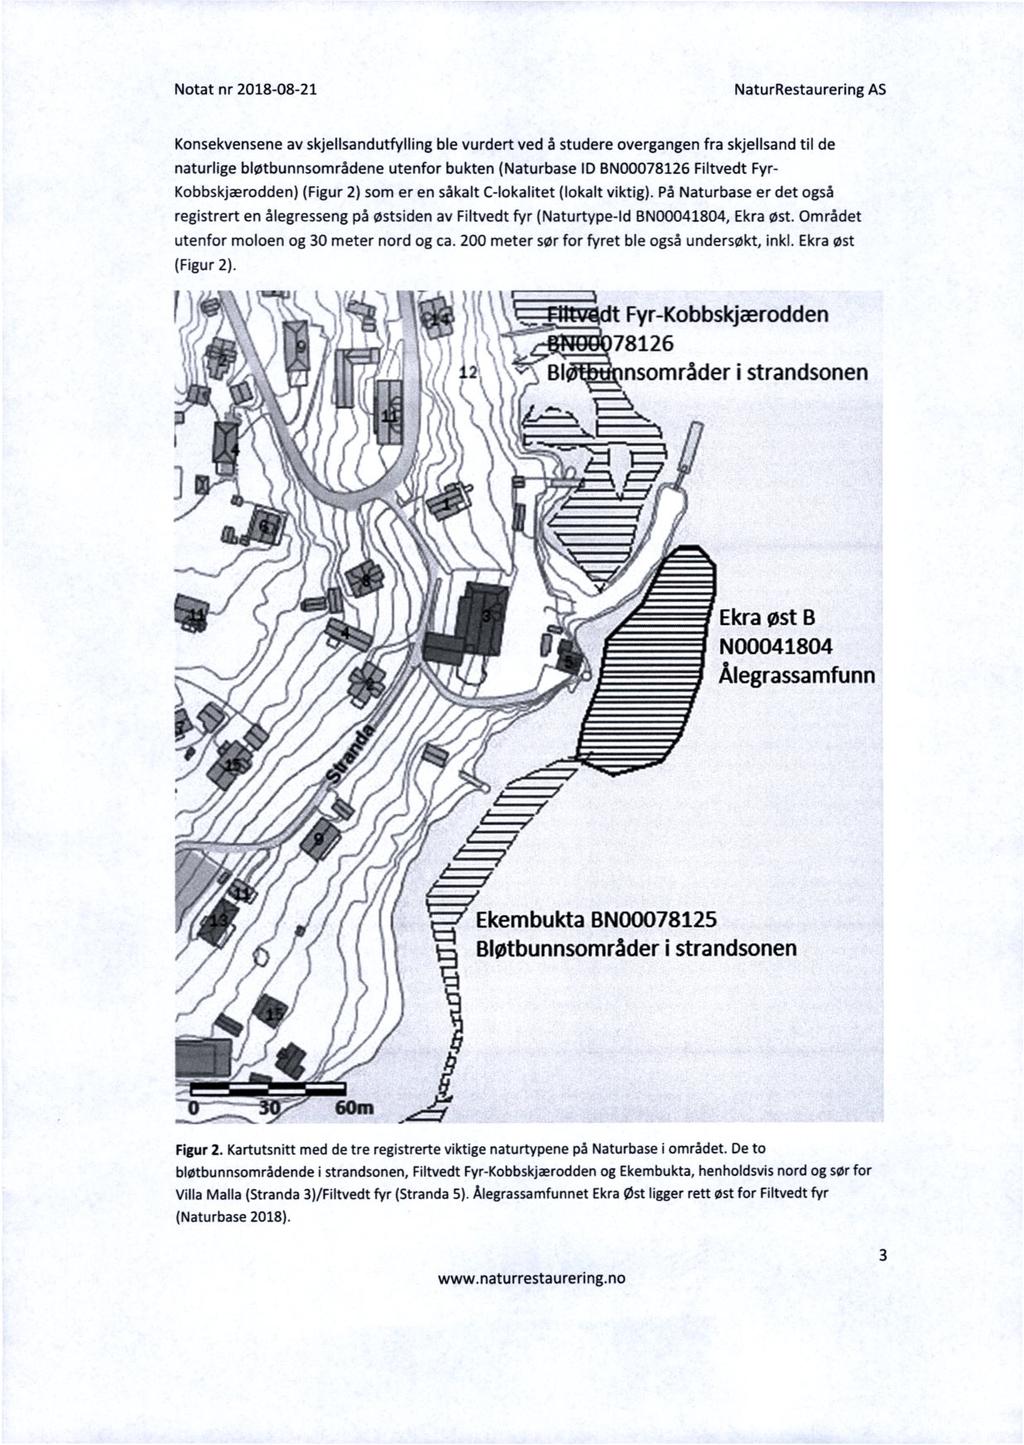 Konsekvensene av skjellsandutfylling ble vurdert ved å studere overgangen fra skjellsand til de naturlige bløtbunnsområdene utenfor bukten (Naturbase ID BN00078126 Filtvedt Fyr- Kobbskjærodden)